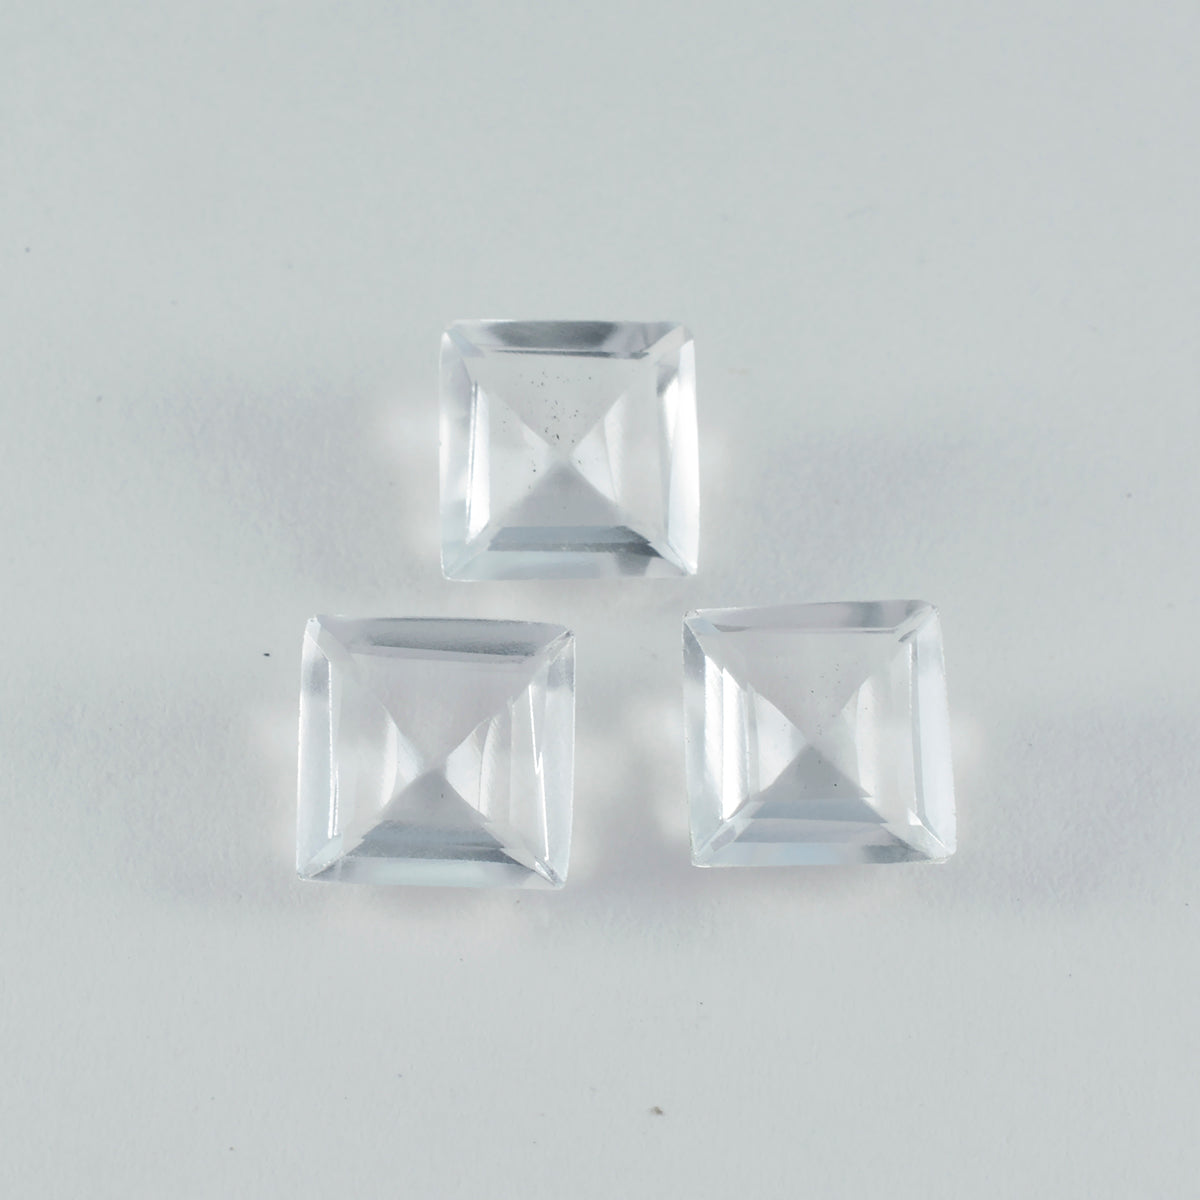 riyogems 1 шт., белый кристалл кварца, граненый 14x14 мм, квадратная форма, отличное качество, свободный камень